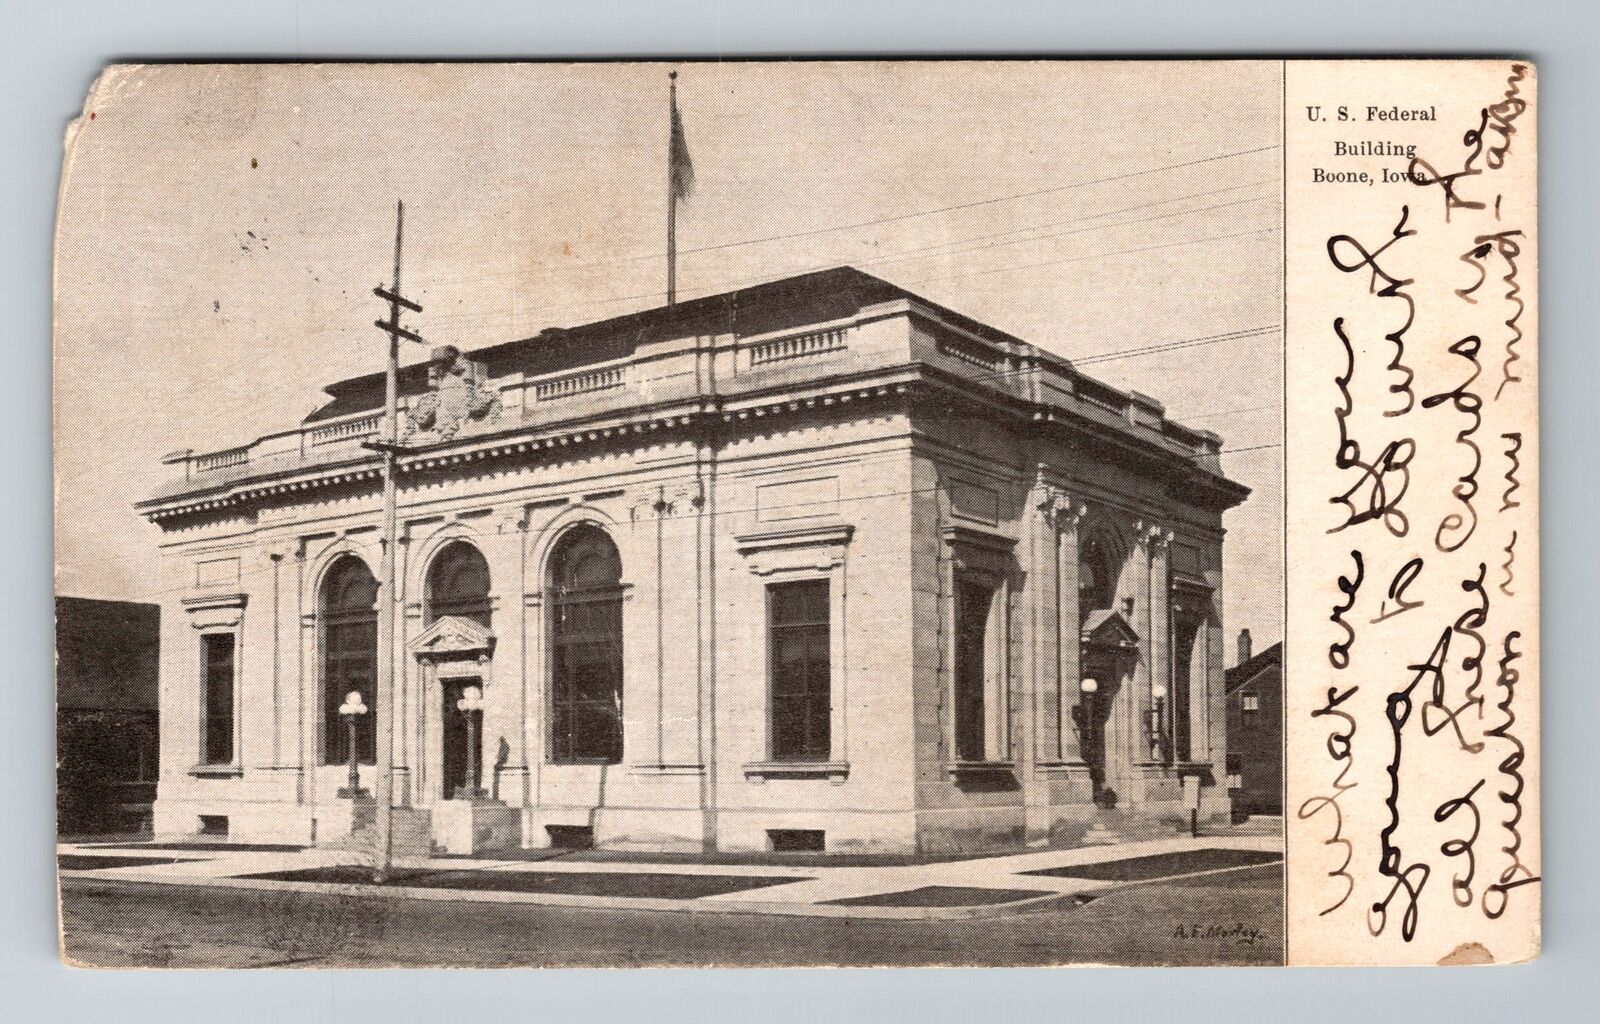 Boone IA-Iowa, US Federal Building, Antique, Vintage c1916 Souvenir Postcard